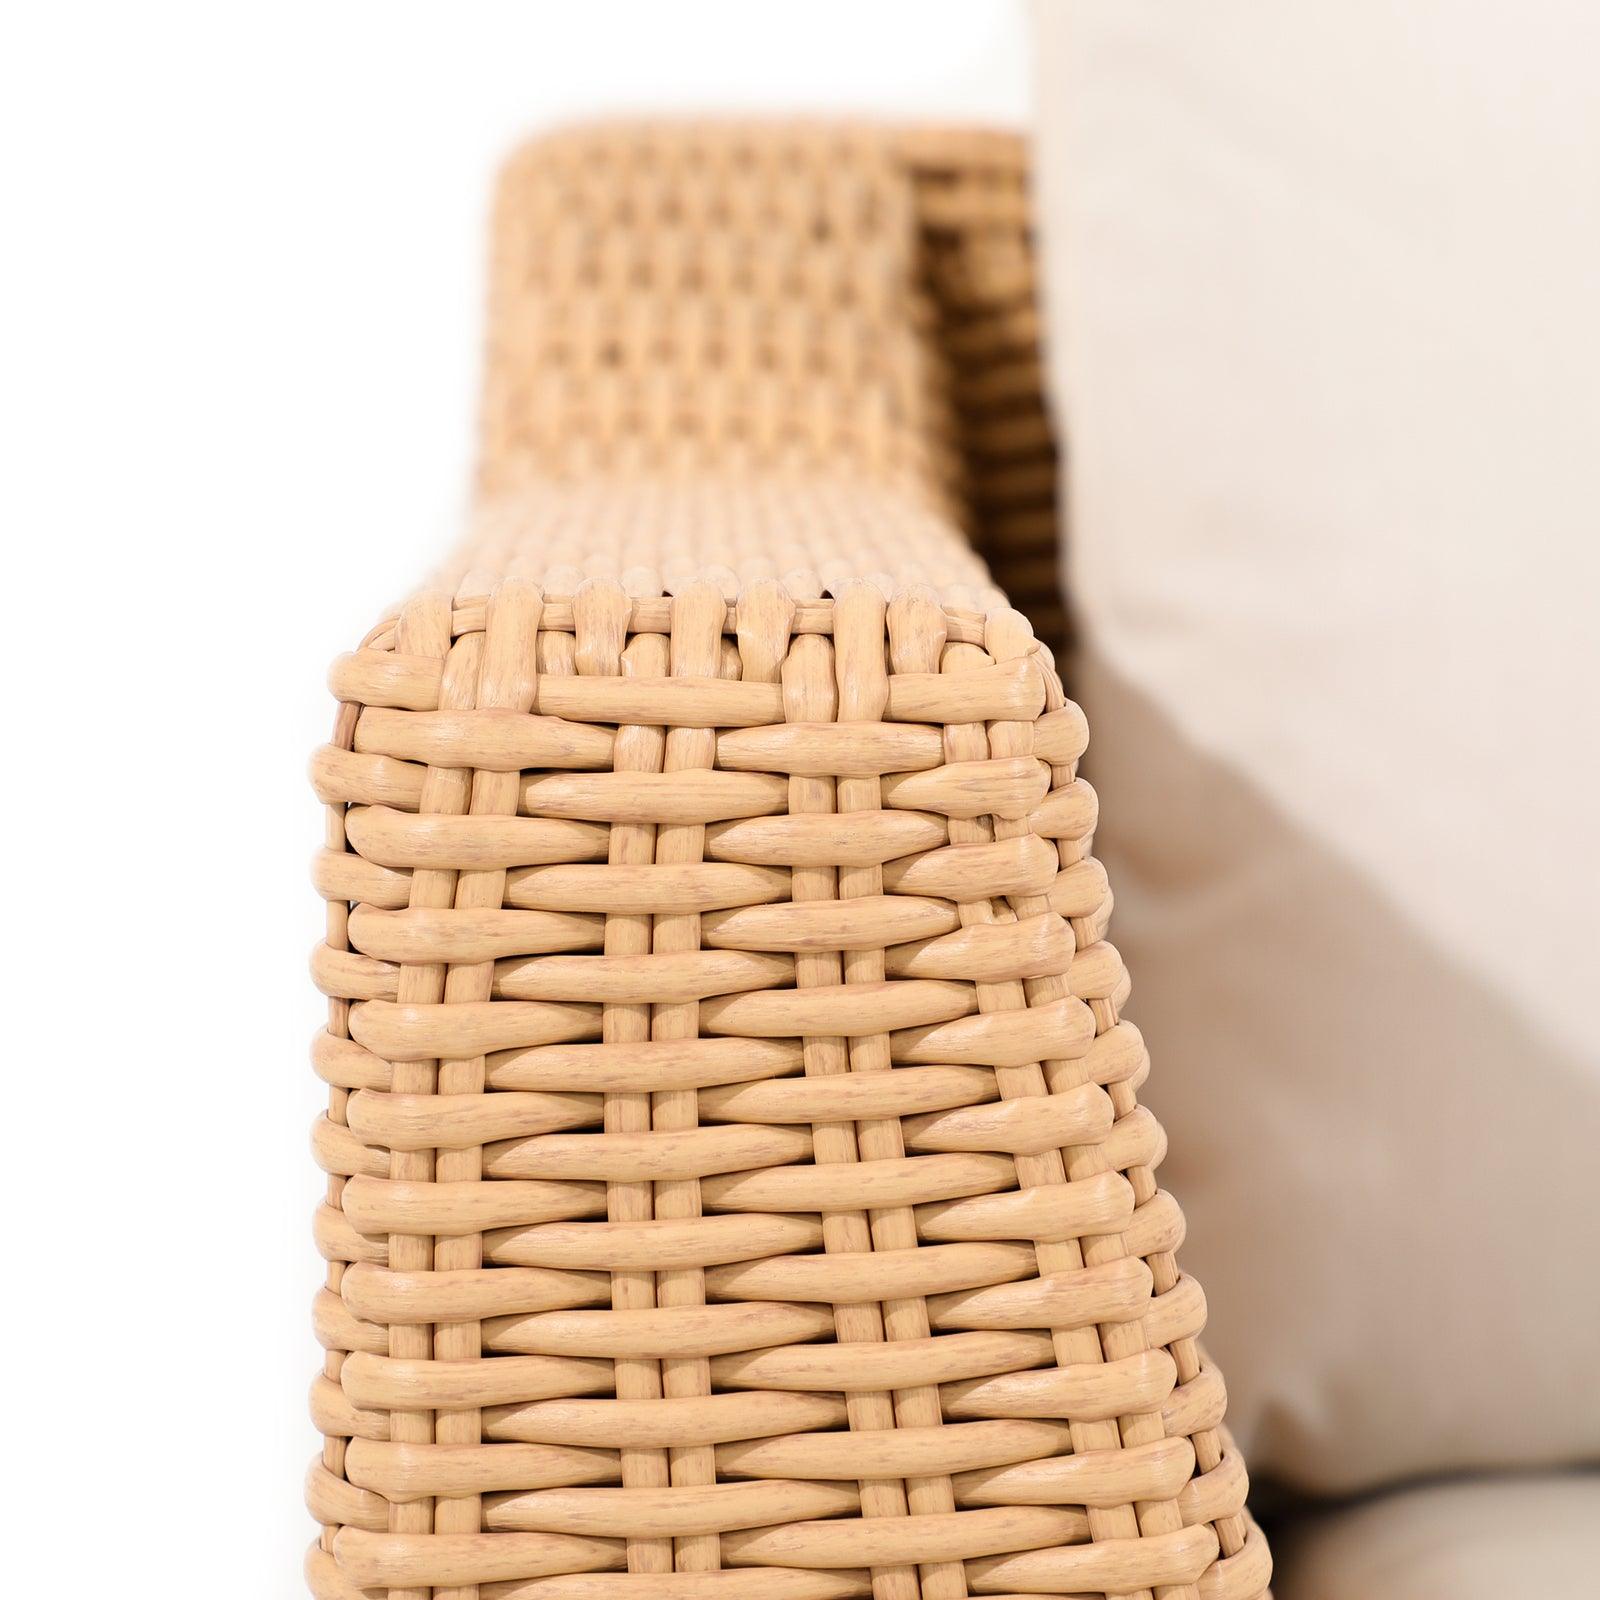 Elba natural color rattan sofa, rattan armrest detail - Jardina Furniture